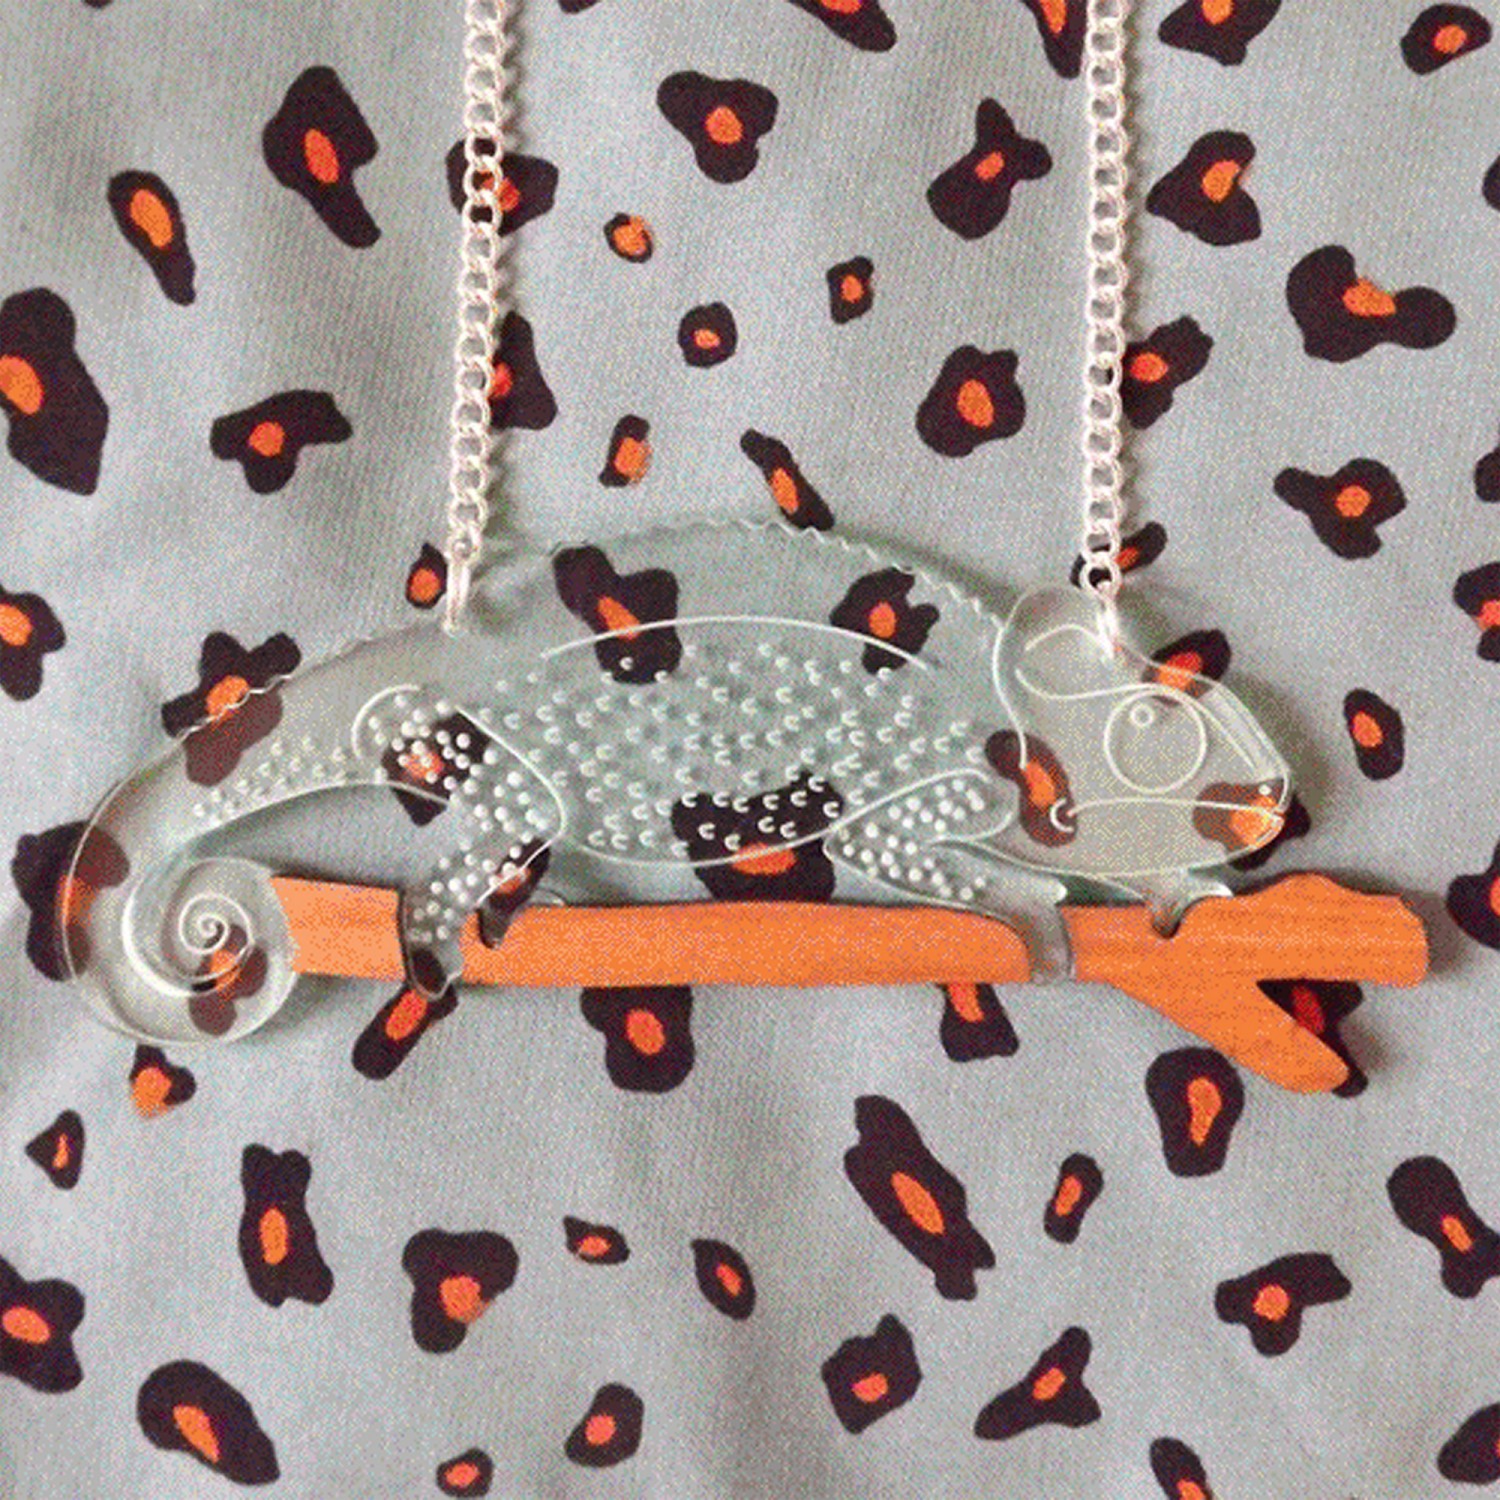 Chameleon Necklace | 25+ Shrinky Dink Crafts